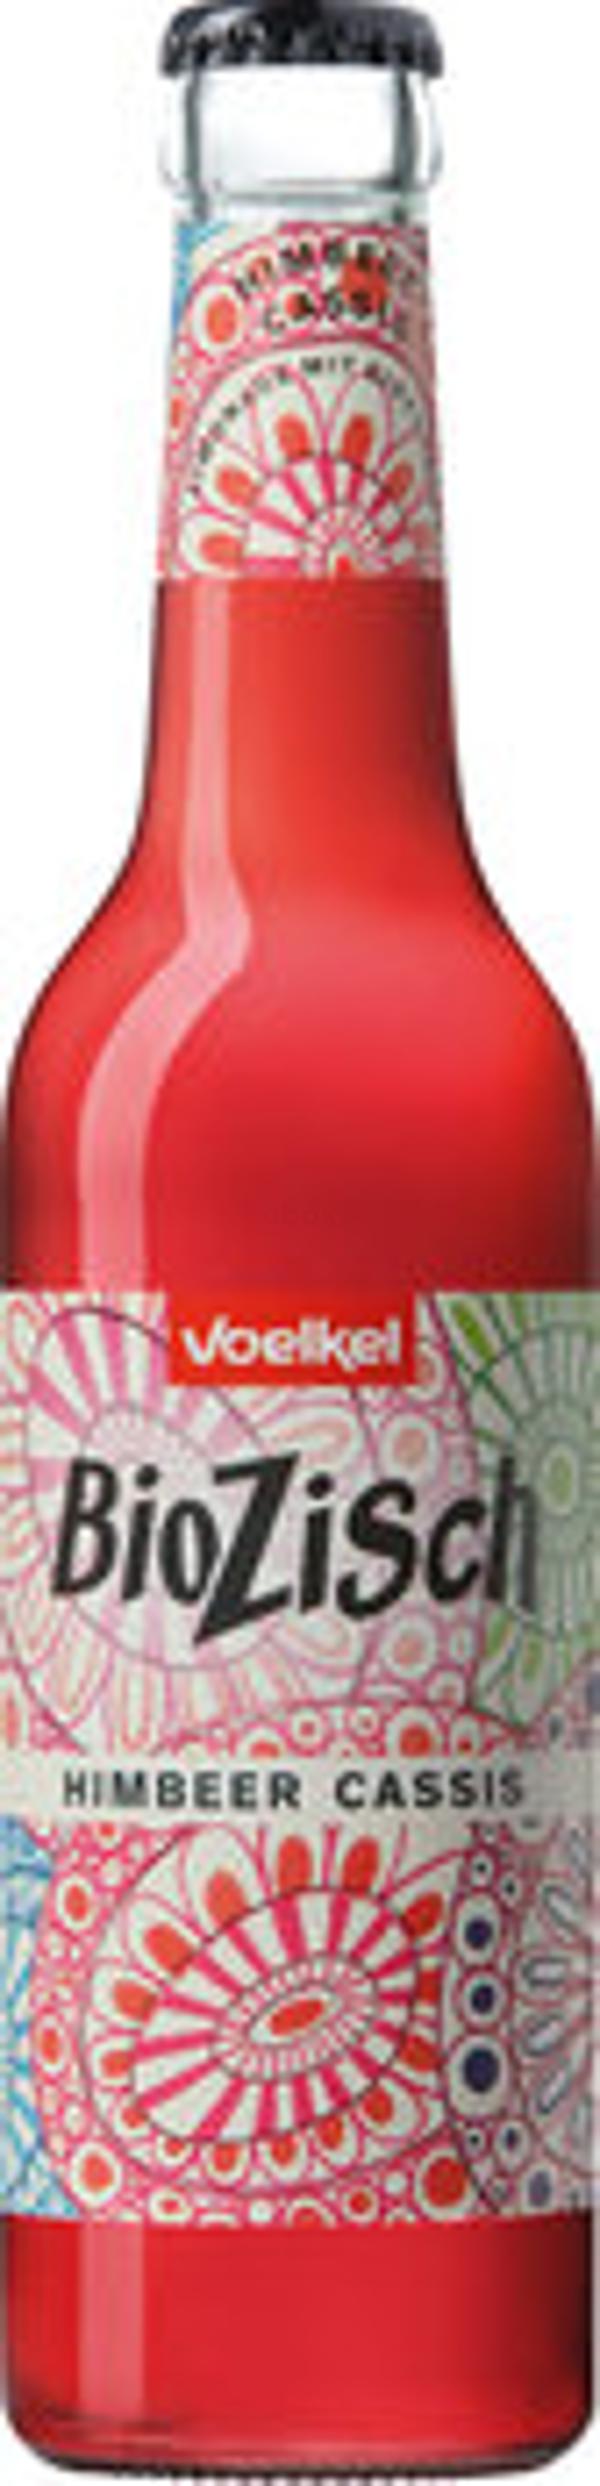 Produktfoto zu BioZisch Himbeer Cassis 0,3l